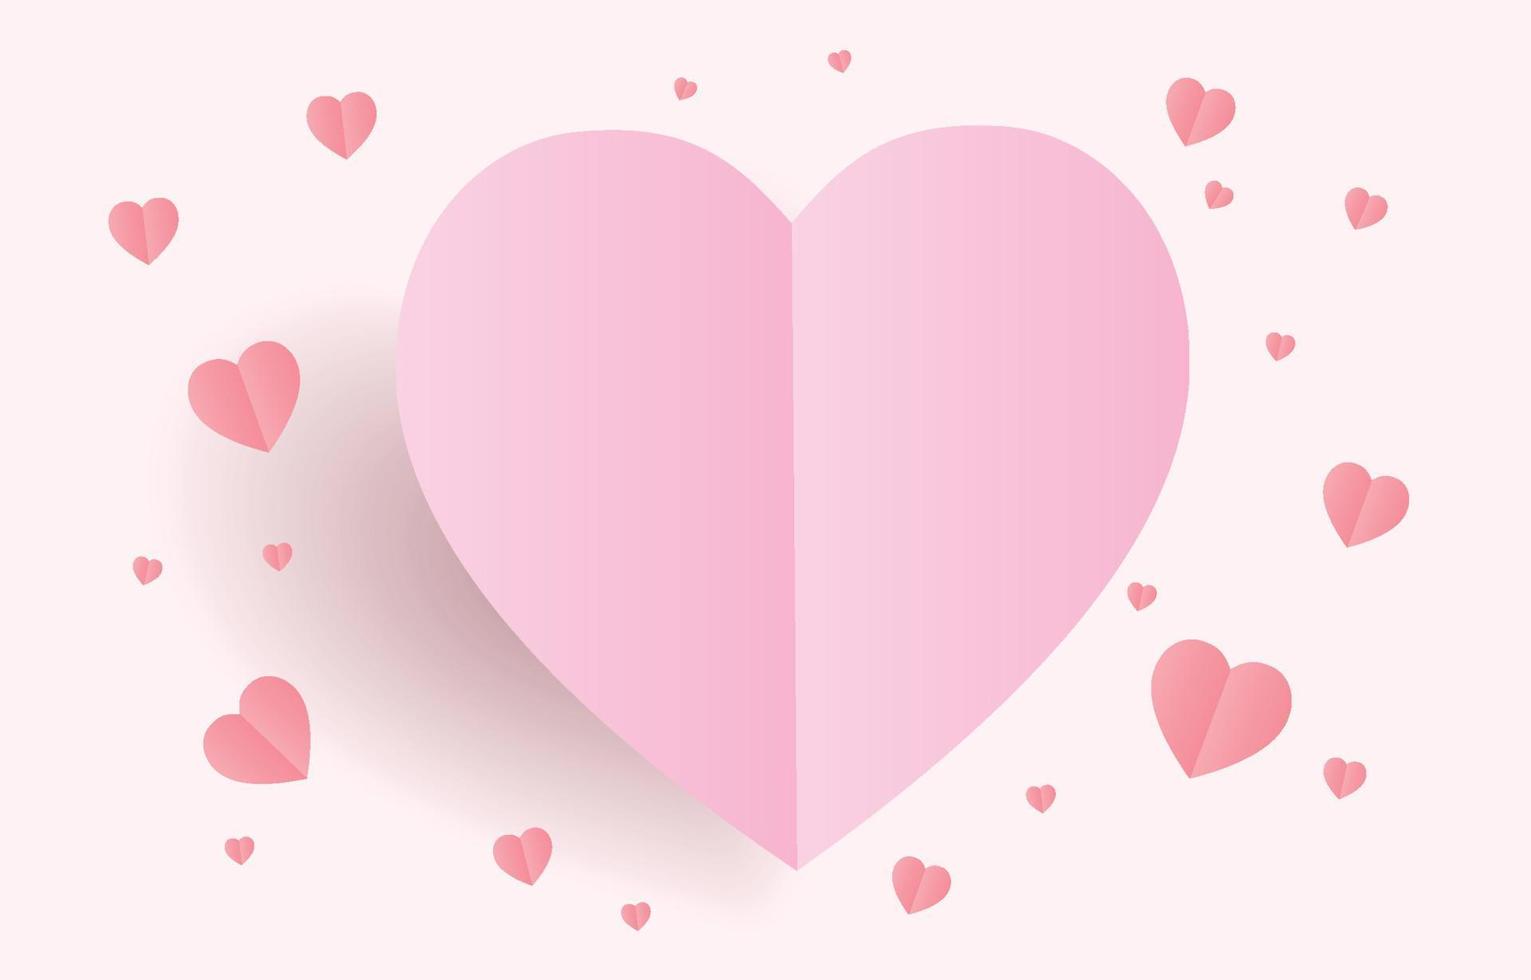 papier gesneden elementen in de vorm van een hart dat op een zachte en zoete achtergrond vliegt. vectorsymbolen van liefde voor gelukkige valentijnsdag, verjaardag, moederdagwenskaartontwerp. vector